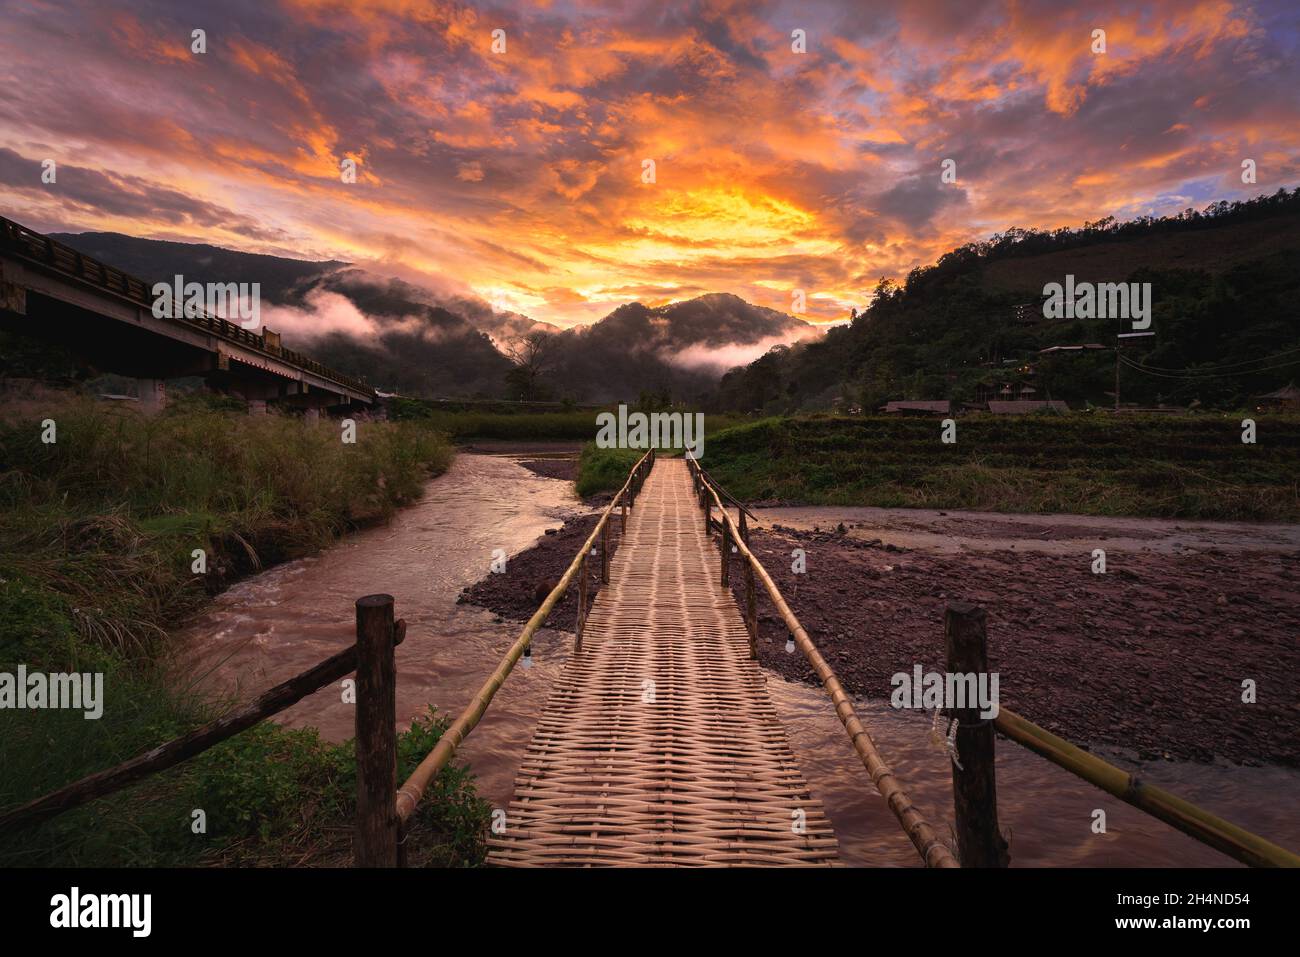 Schöne Landschaft szenische der hölzernen Bambusbrücke mit dem Nebel und dramatischen Himmel Hintergrund in der Sonnenuntergangszeit bei Sapun in der Provinz Nan, nördlich von T Stockfoto